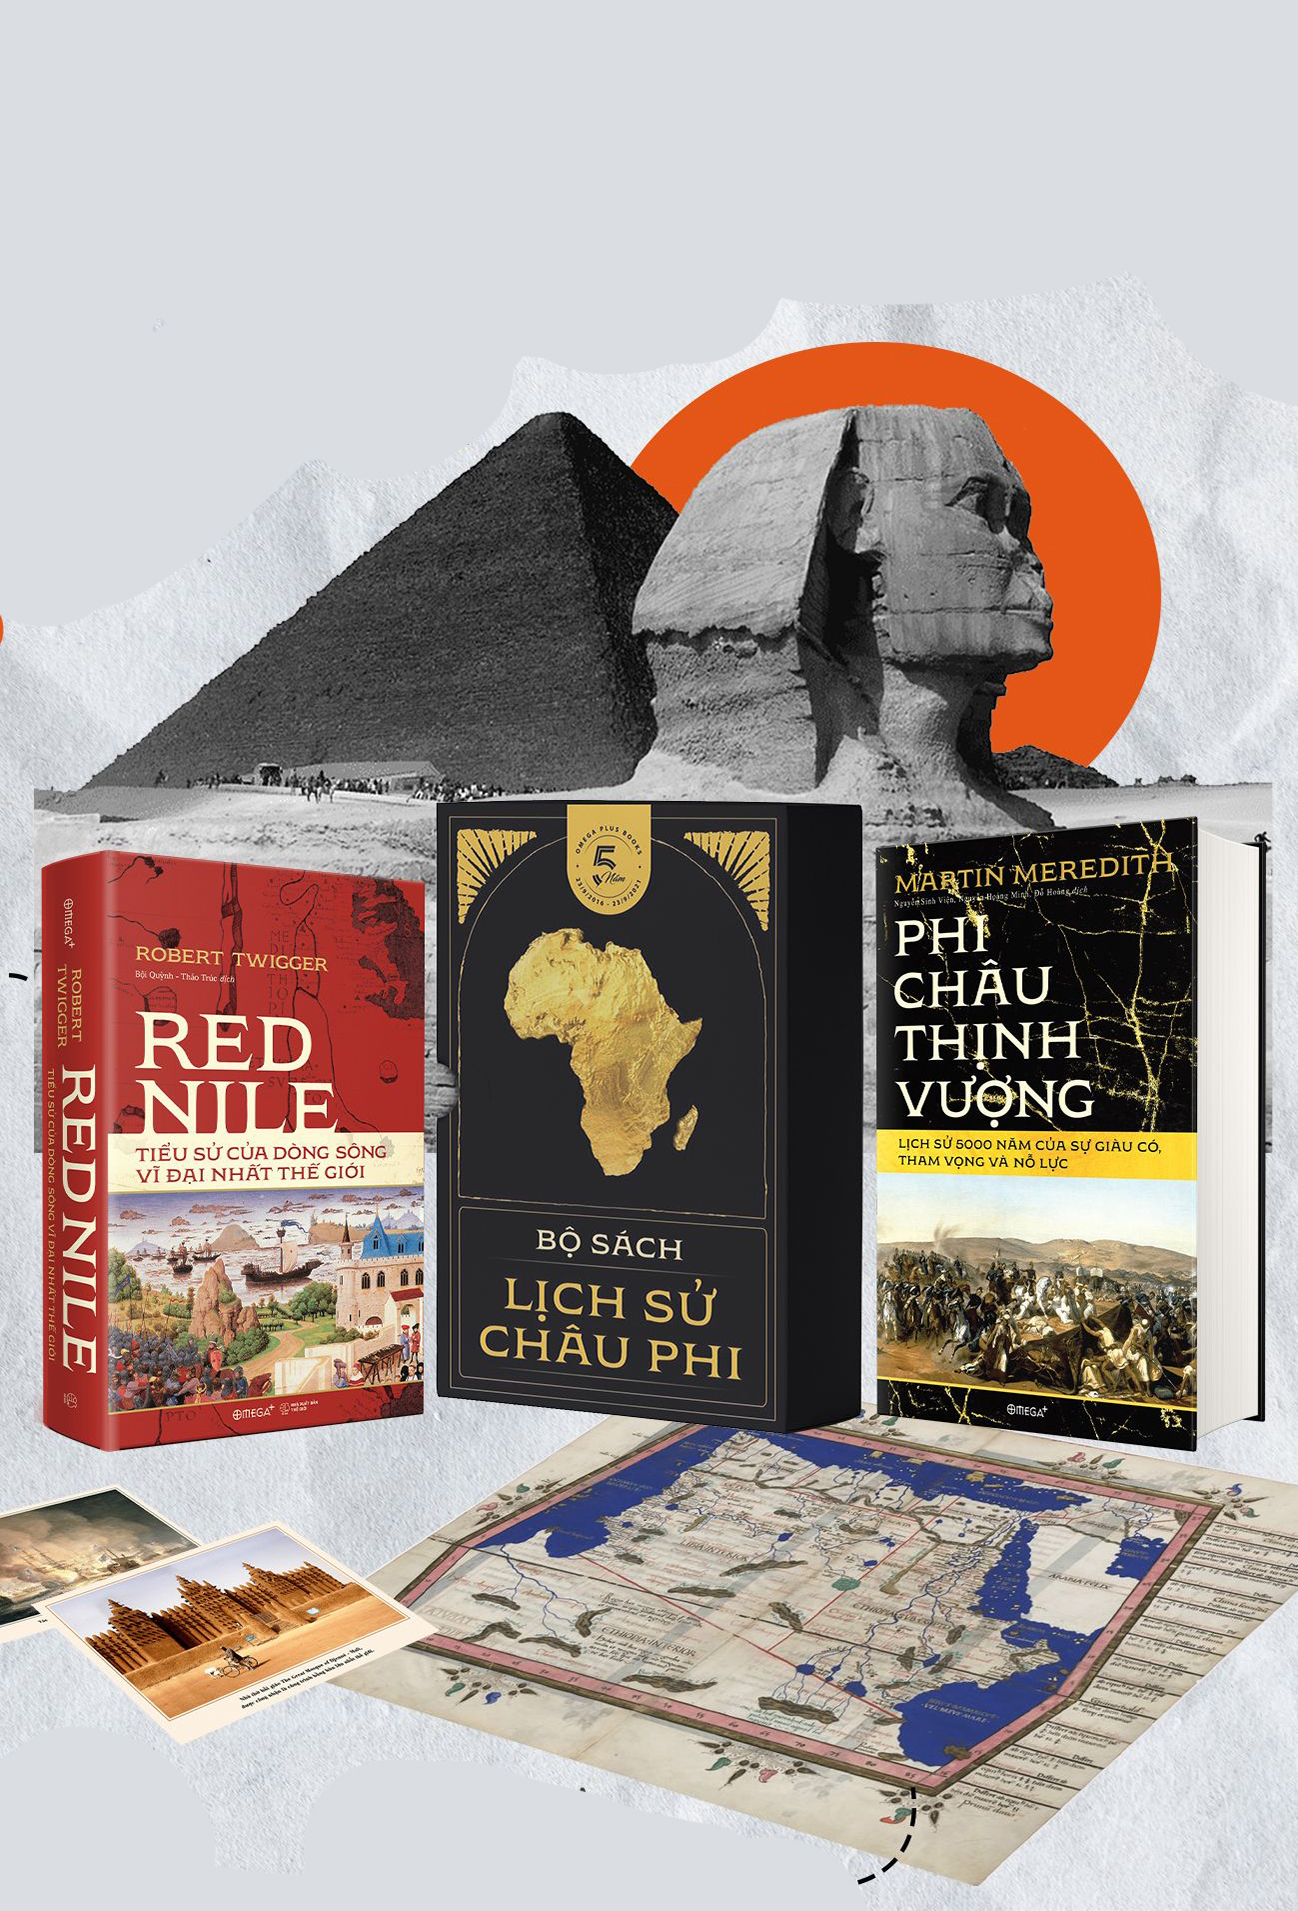 Bộ Sách Lịch Sử Châu Phi: Red Nile - Tiểu Sử Của Dòng Sông Vĩ Đại Nhất Thế Giới + Phi Châu Thịnh Vượng - Lịch Sử 5000 Năm Của Sự Giàu Có, Tham Vọng Và Nỗ Lực